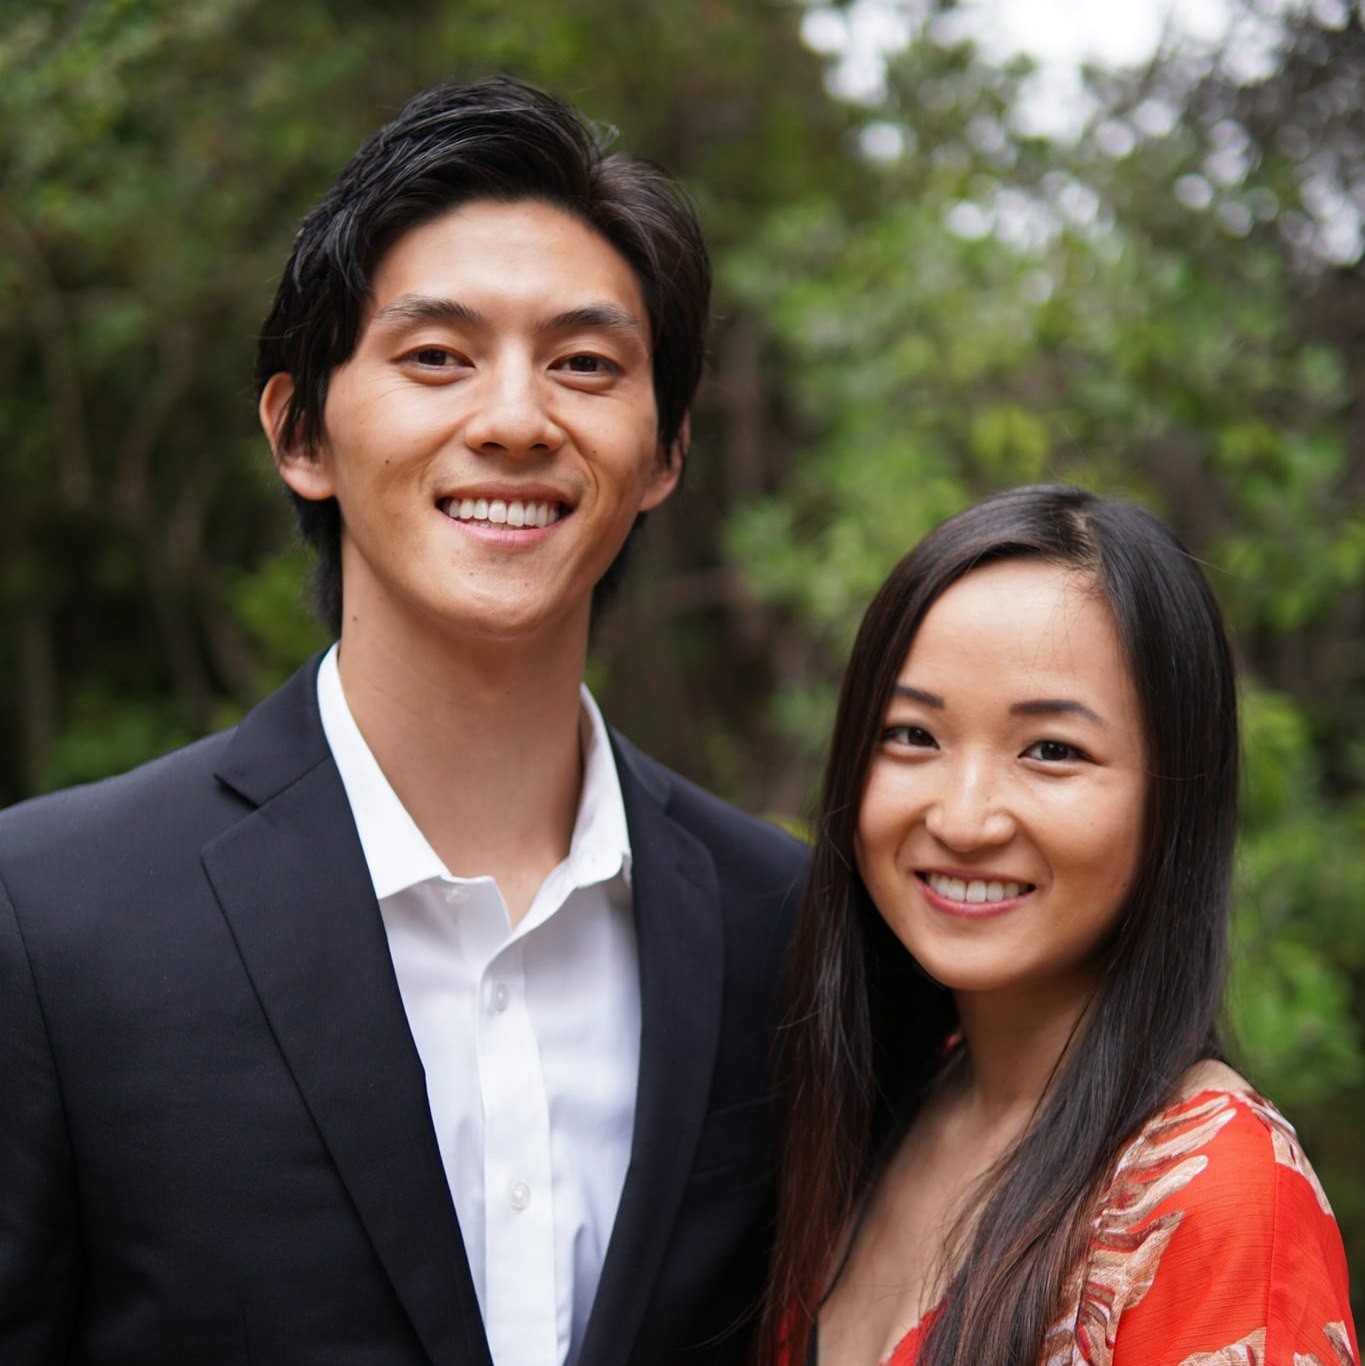 
Cặp vợ chồng trẻ Tseung và Pan sở hữu 21 BĐS cho thuê ở độ tuổi 30
